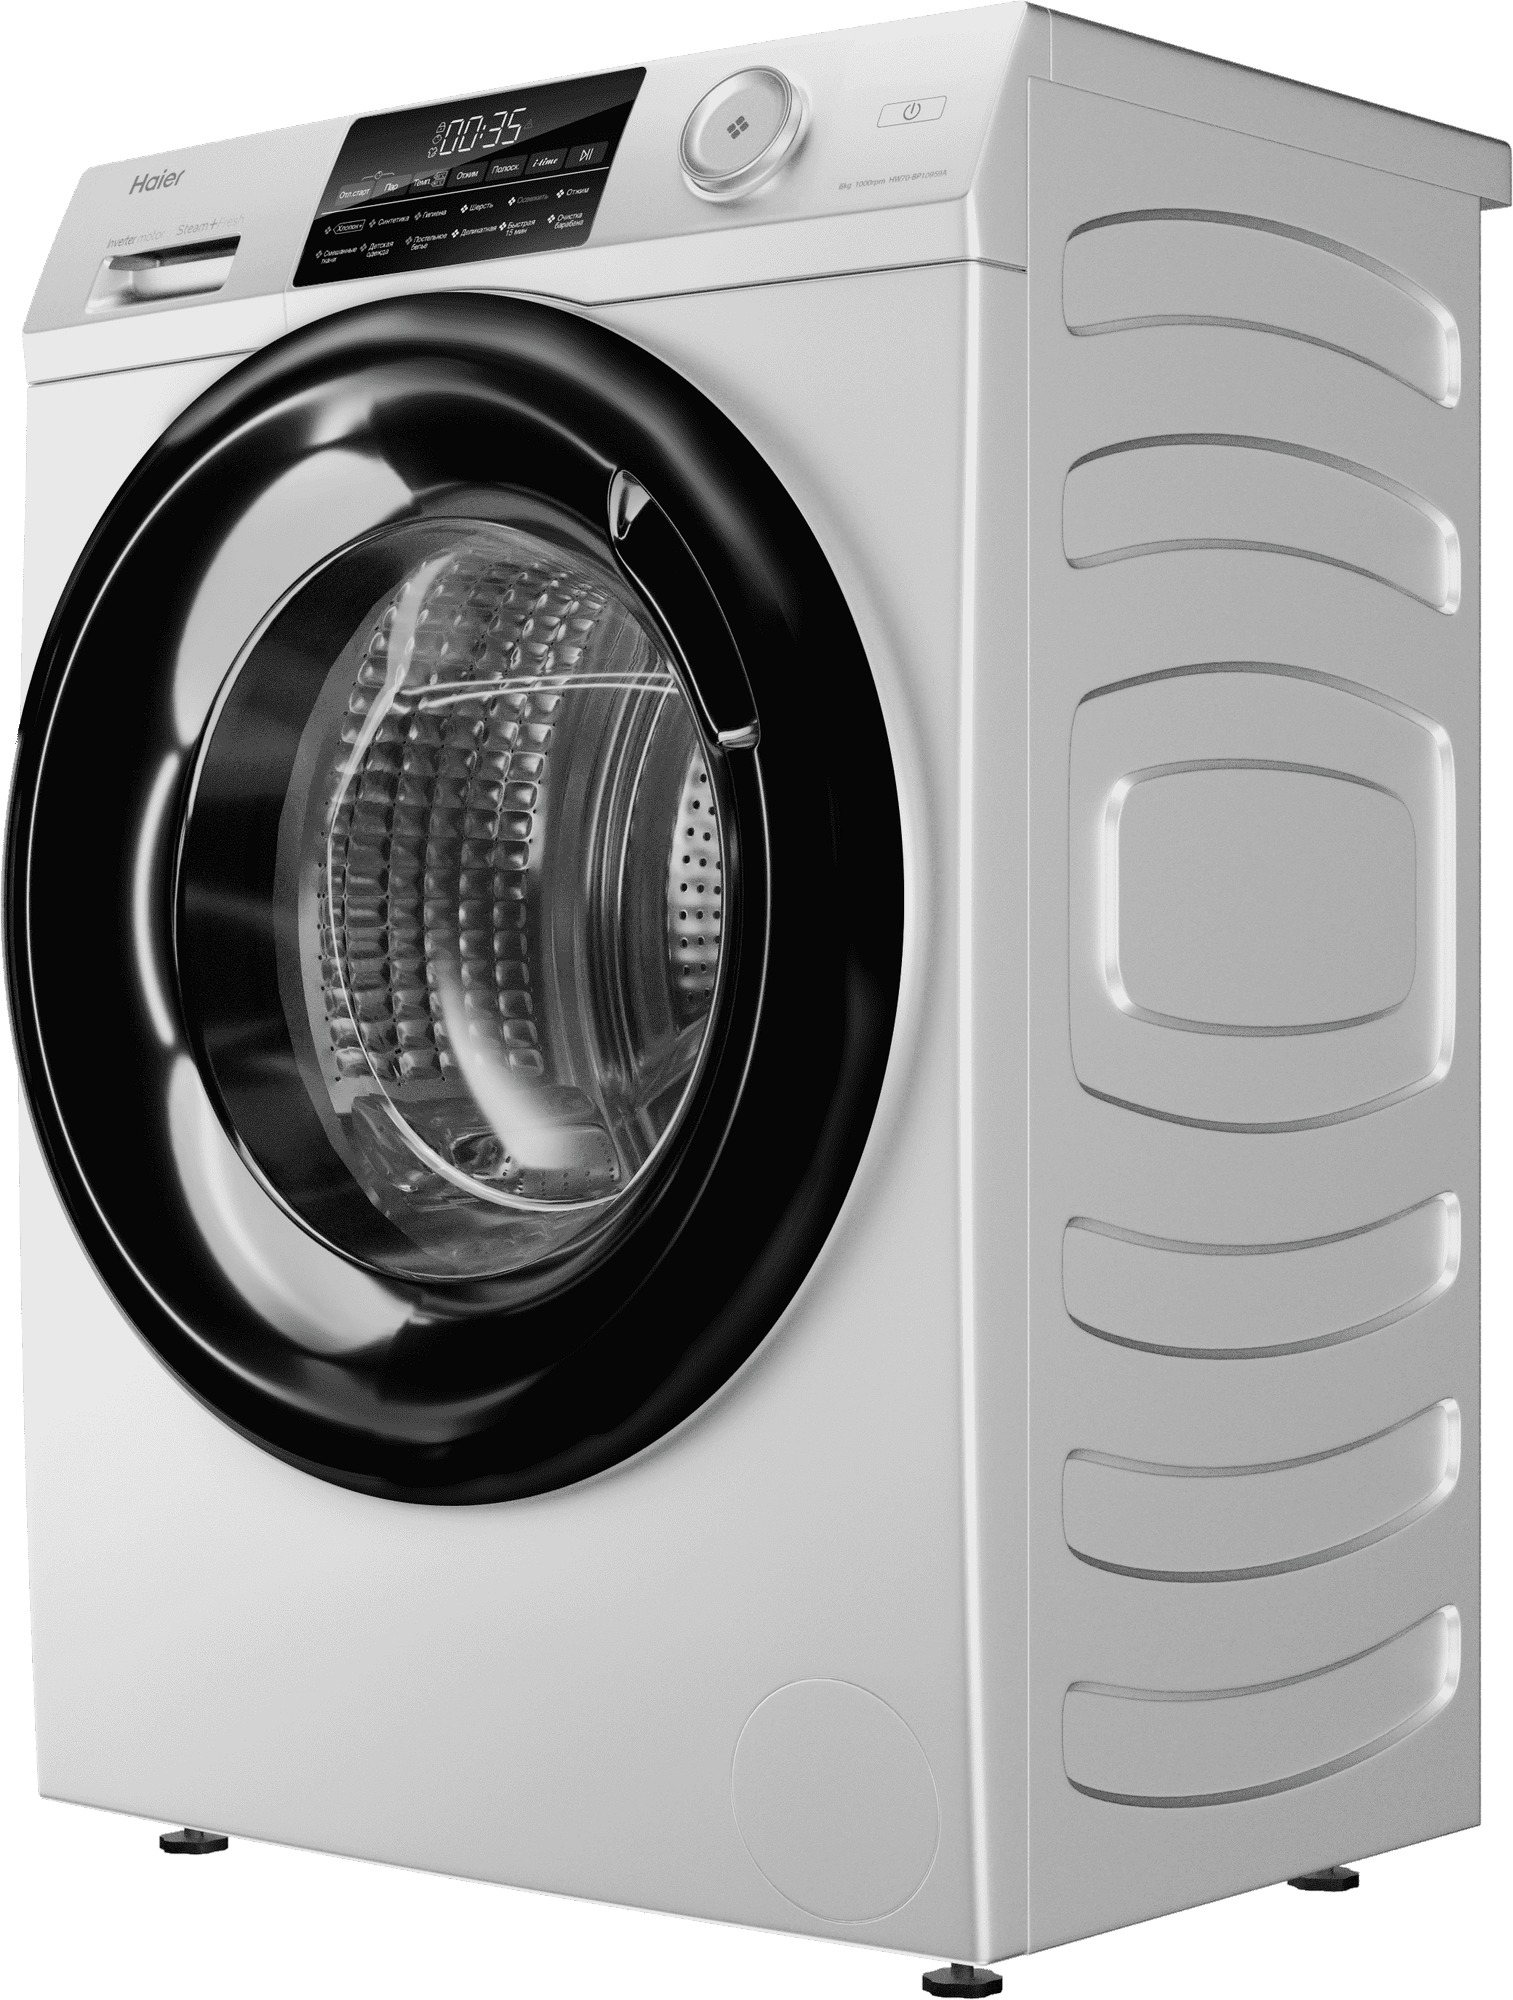 9 причин, почему стиральная машина плохо отжимает бельё